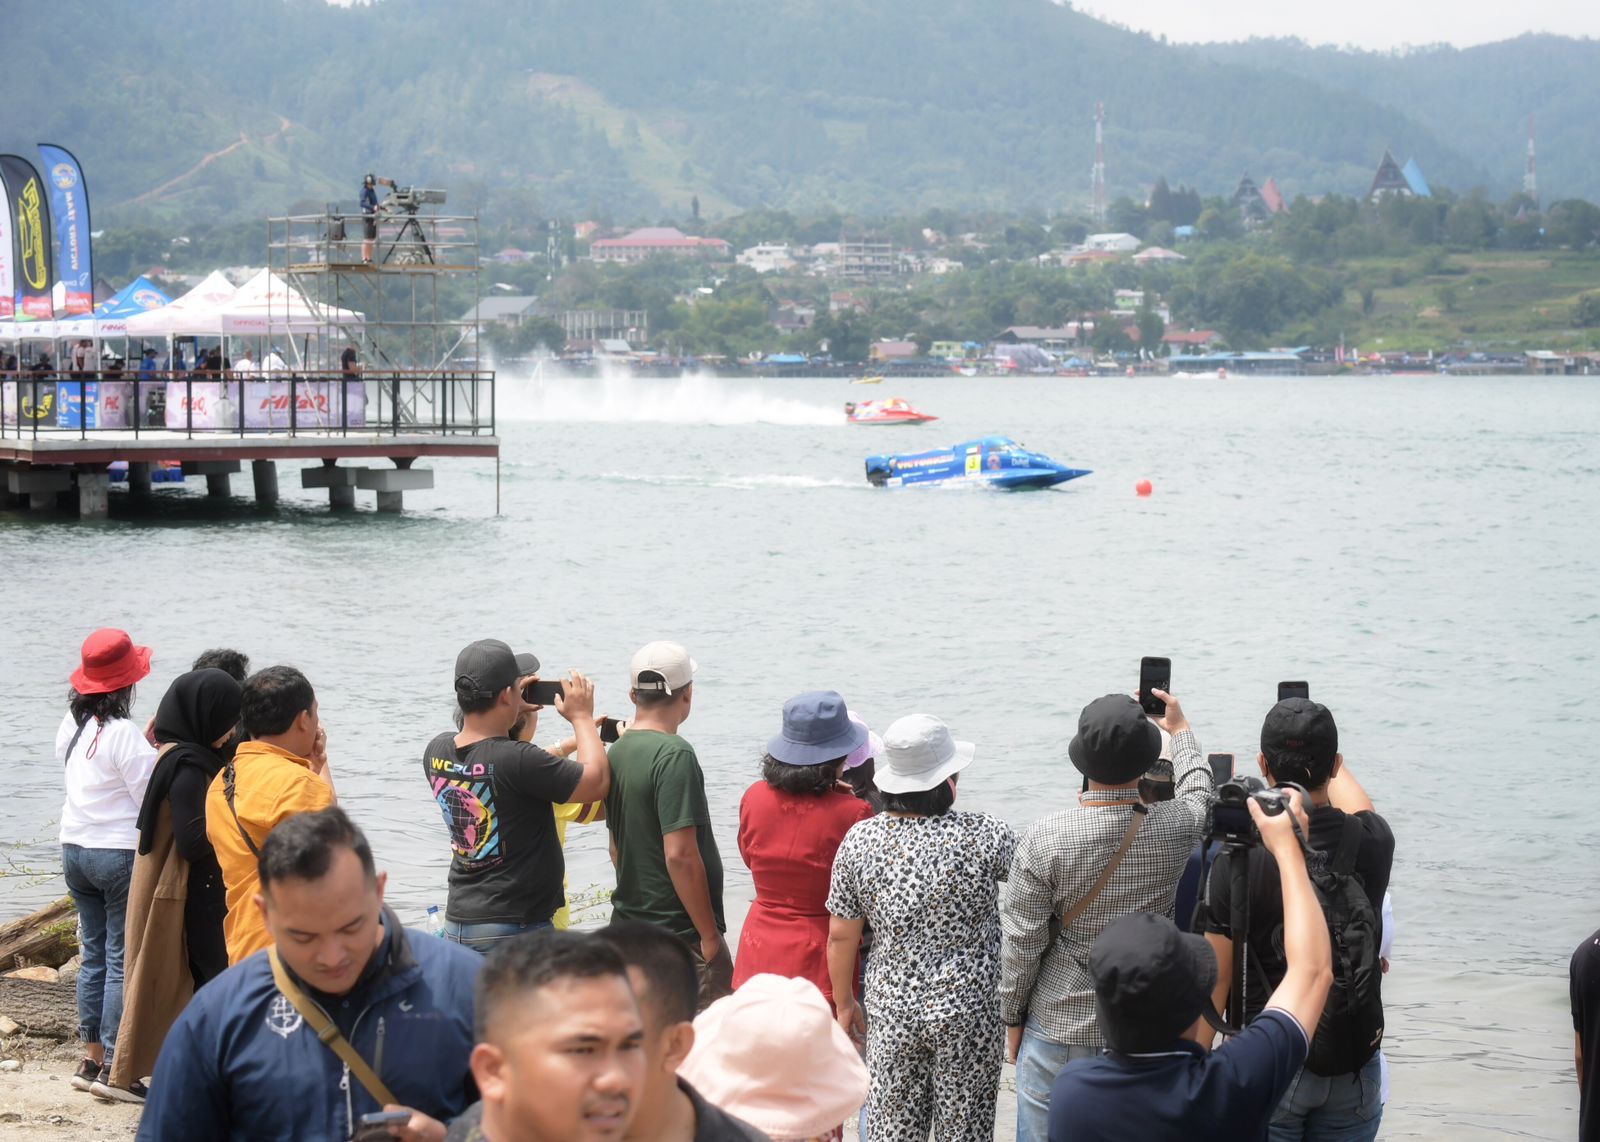 Masyarakat Antusias Nonton Langsung F1 Powerboat di Danau Toba, Penasaran Sama Perahu Balapnya